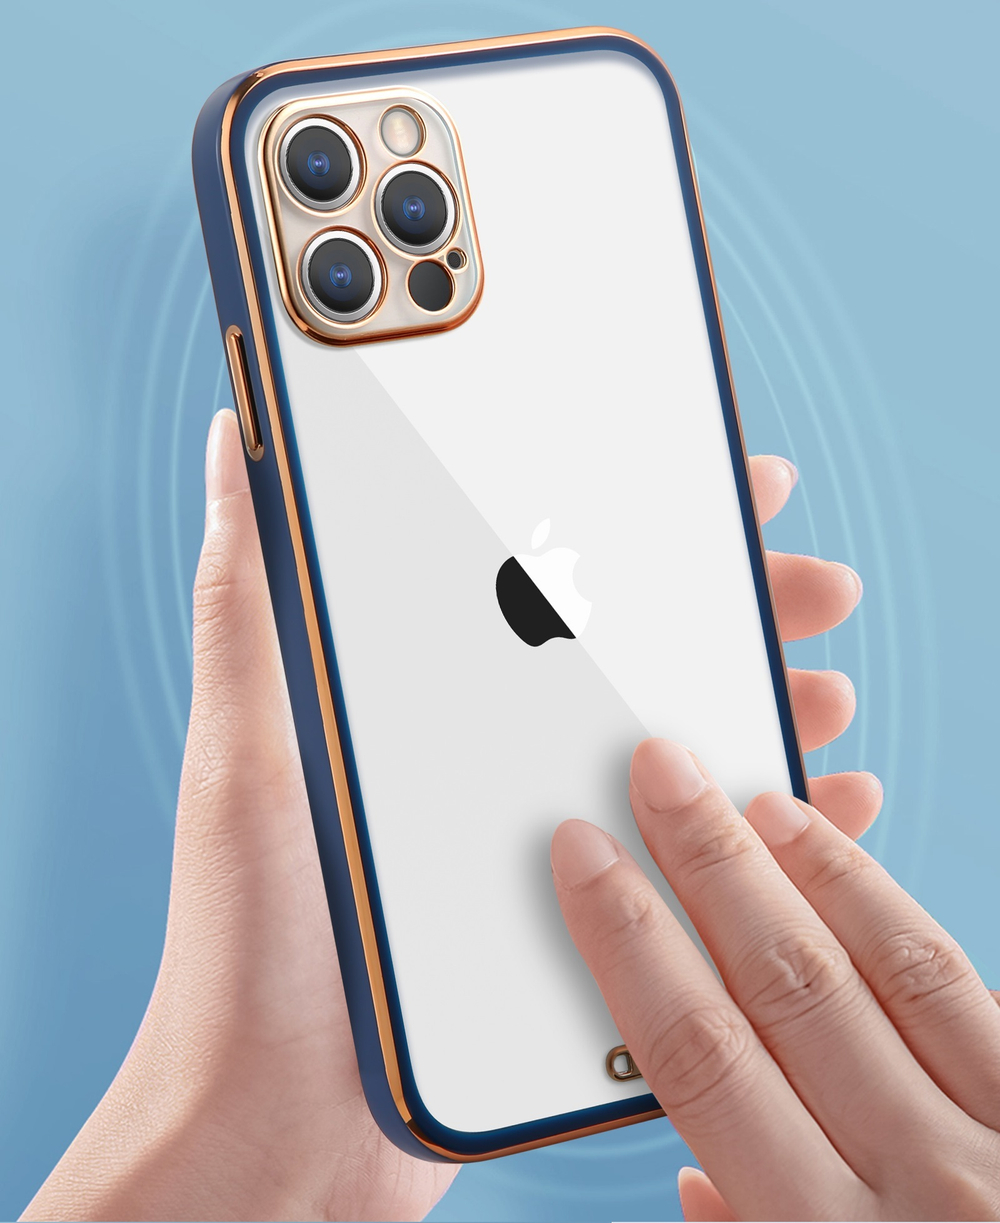 Чехол мягкий прозрачный для телефона iPhone 12 и 12 Pro, рамки синего цвета с вставками золотого цвета